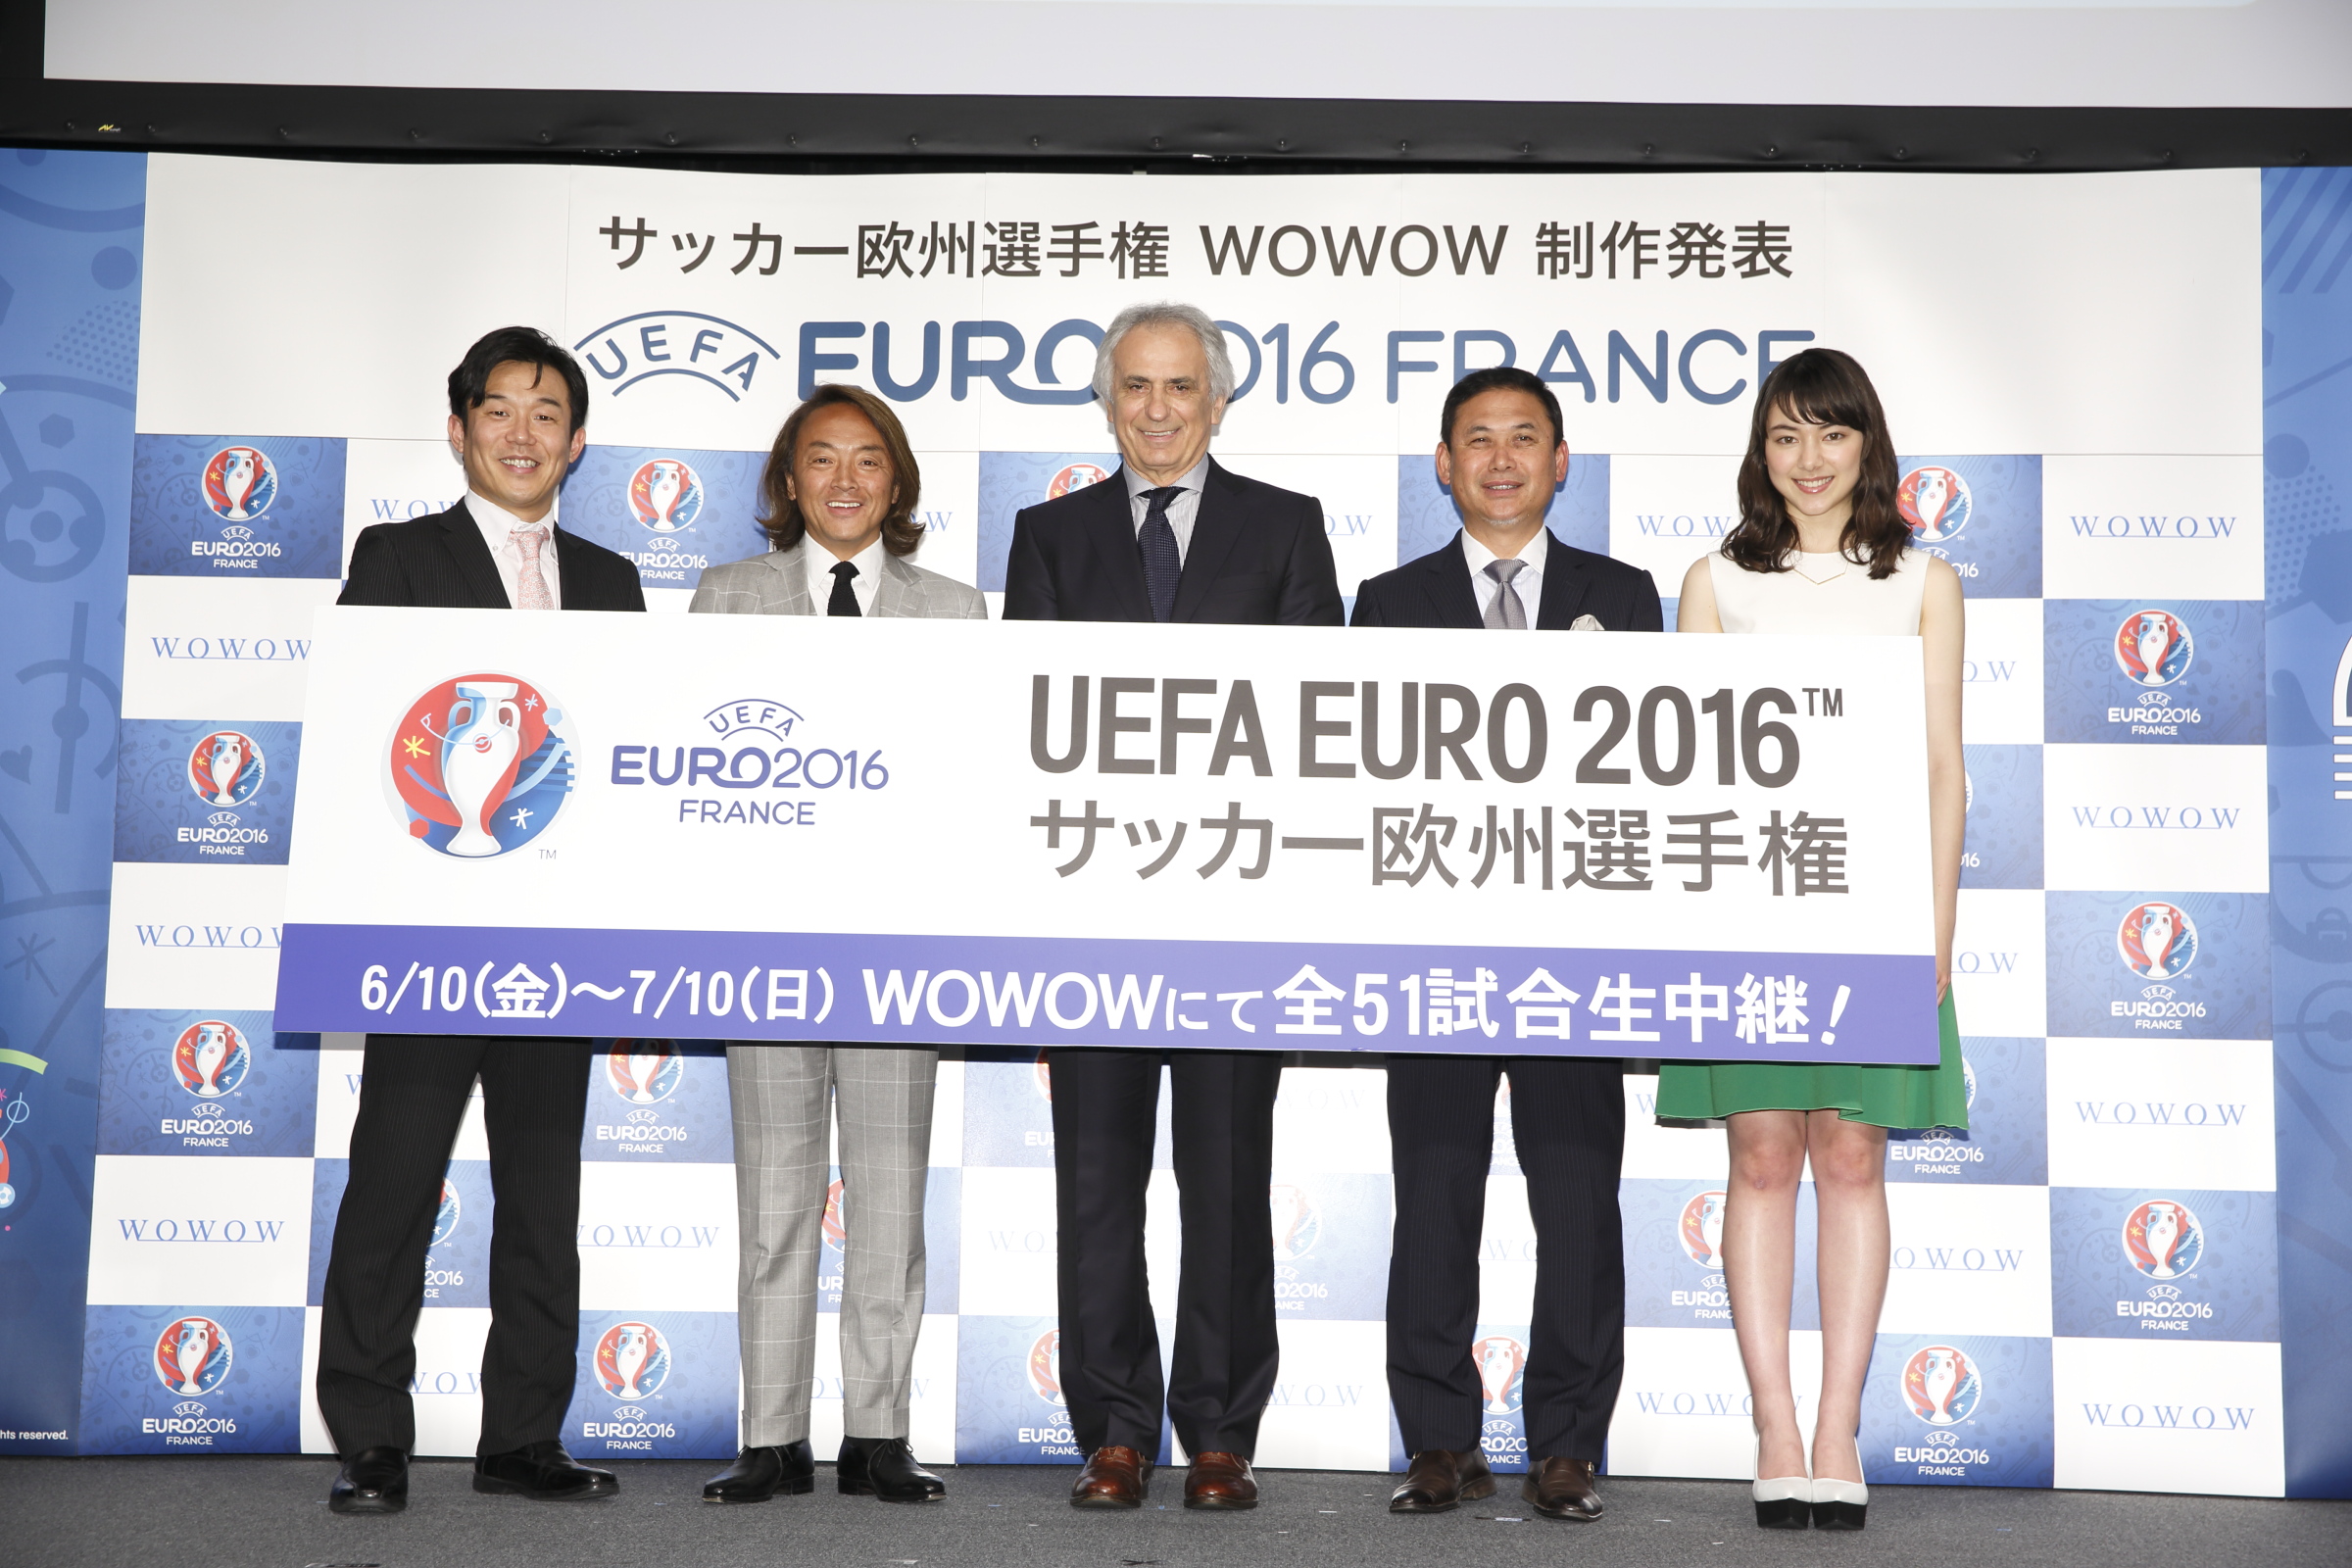 Uefa Euro 16tm Wowowアンバサダーにハリルホジッチ監督が決定 ゲスト解説に佐々木則夫氏も加え Uefa Euro 16tm をwowowにて全51試合を完全生中継 株式会社wowowのプレスリリース